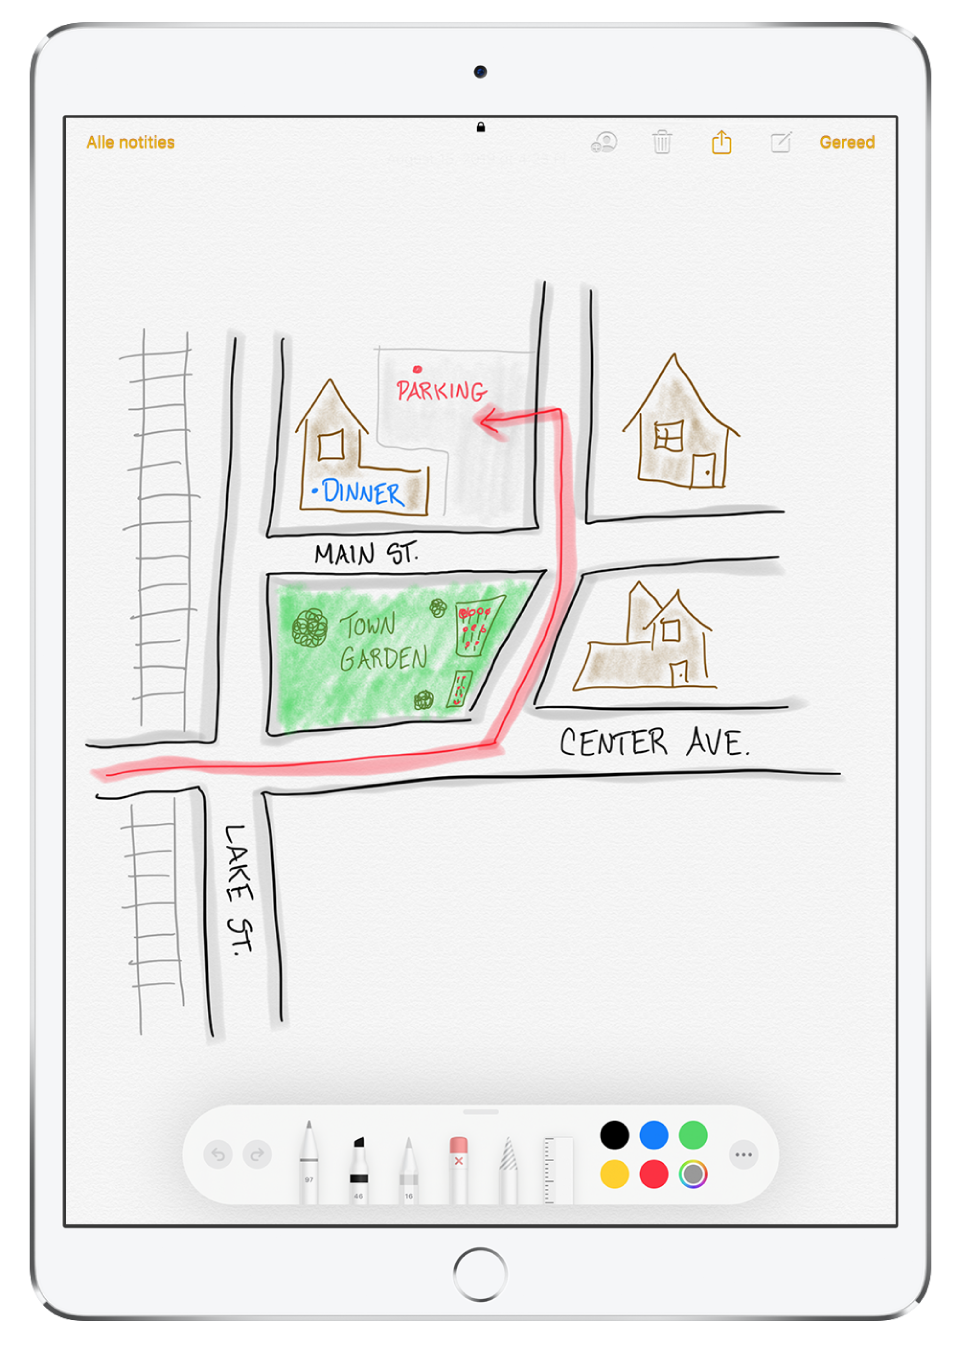 Een tekening van een woonwijk in een notitie in de app Notities. De tekening bevat straten met namen en een rode pijl die naar de beschikbare parkeerplaatsen wijst. Onder in het scherm staat de markeringsknoppenbalk, waarin een schrijfgereedschap en een aangepaste kleur zijn geselecteerd.